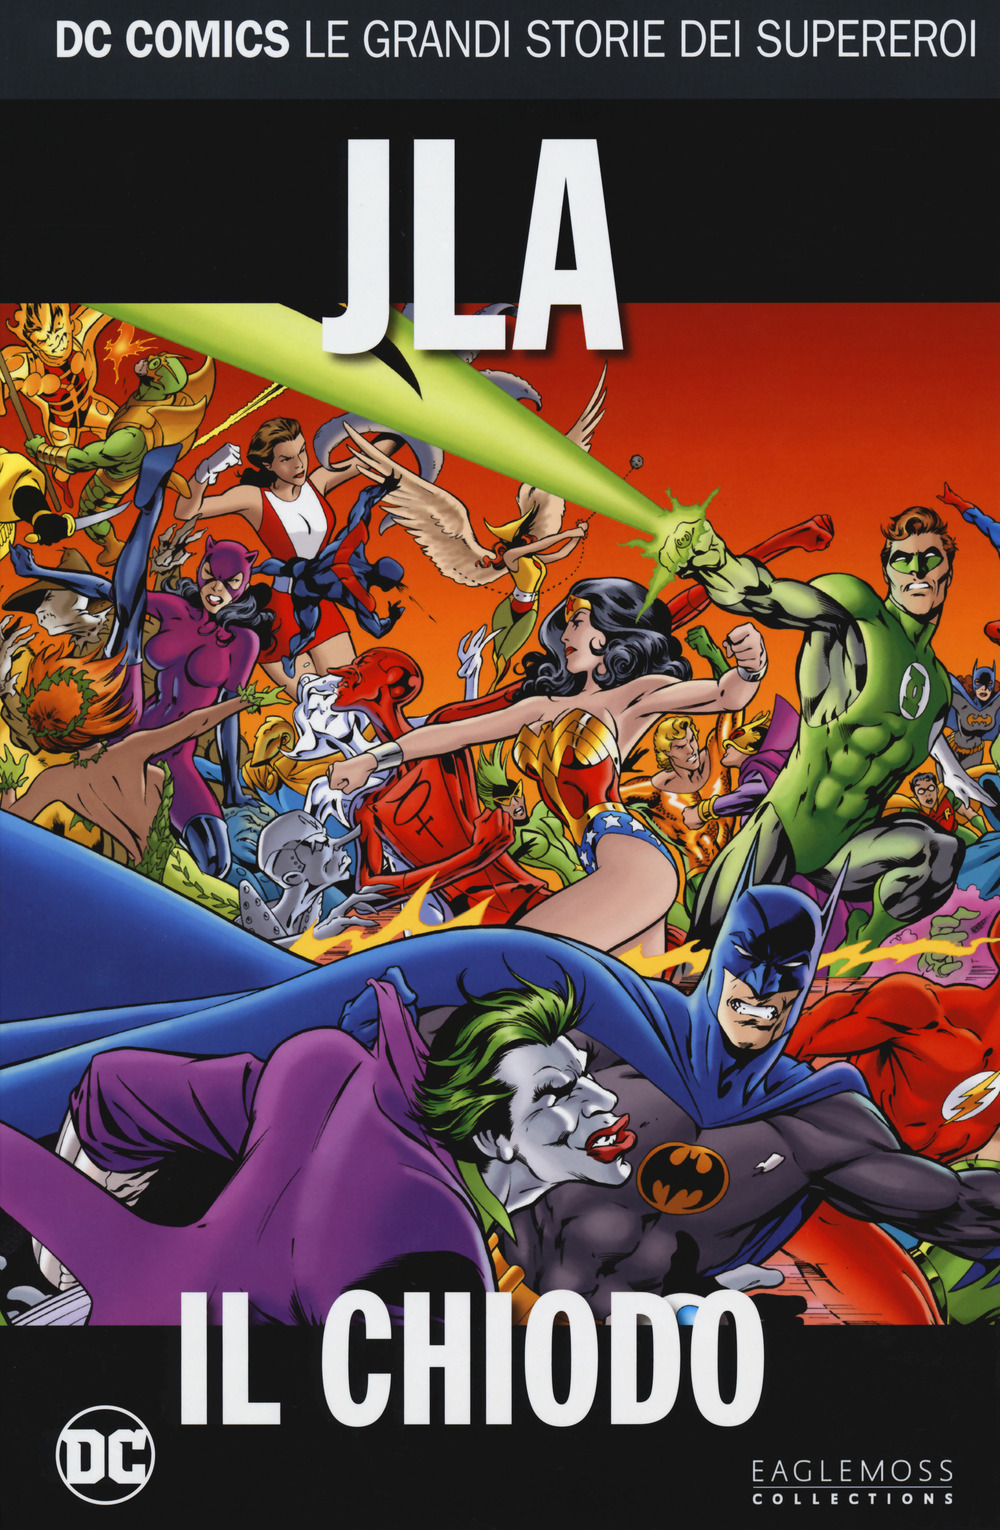 Il chiodo. Justice League America